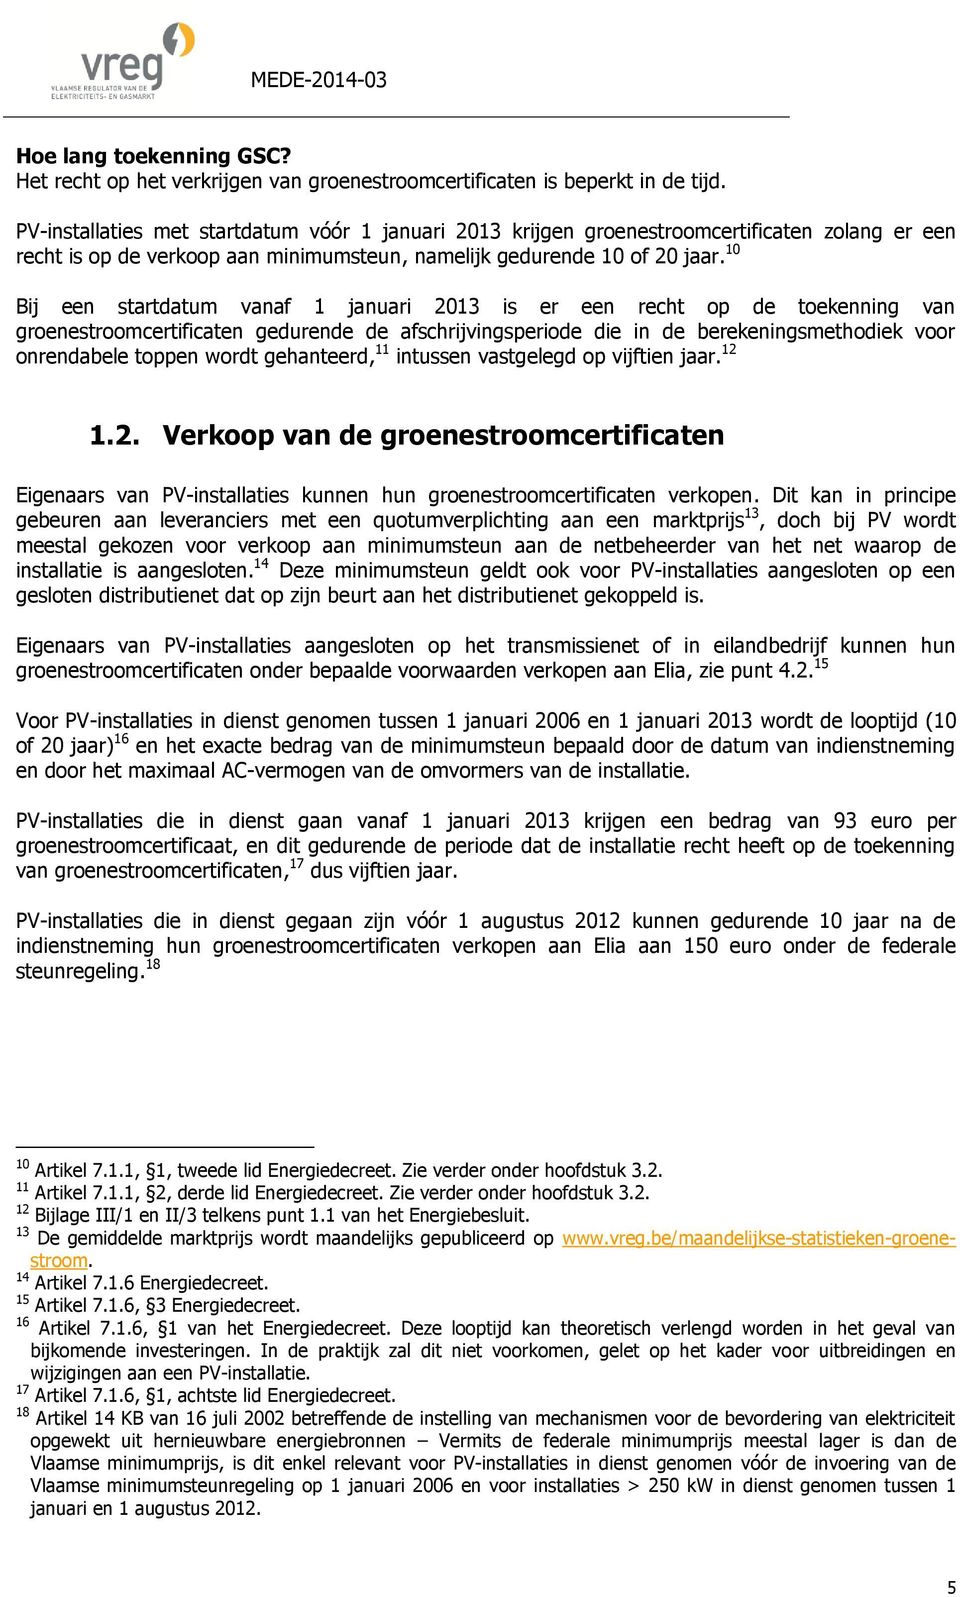 10 Bij een startdatum vanaf 1 januari 2013 is er een recht op de toekenning van groenestroomcertificaten gedurende de afschrijvingsperiode die in de berekeningsmethodiek voor onrendabele toppen wordt